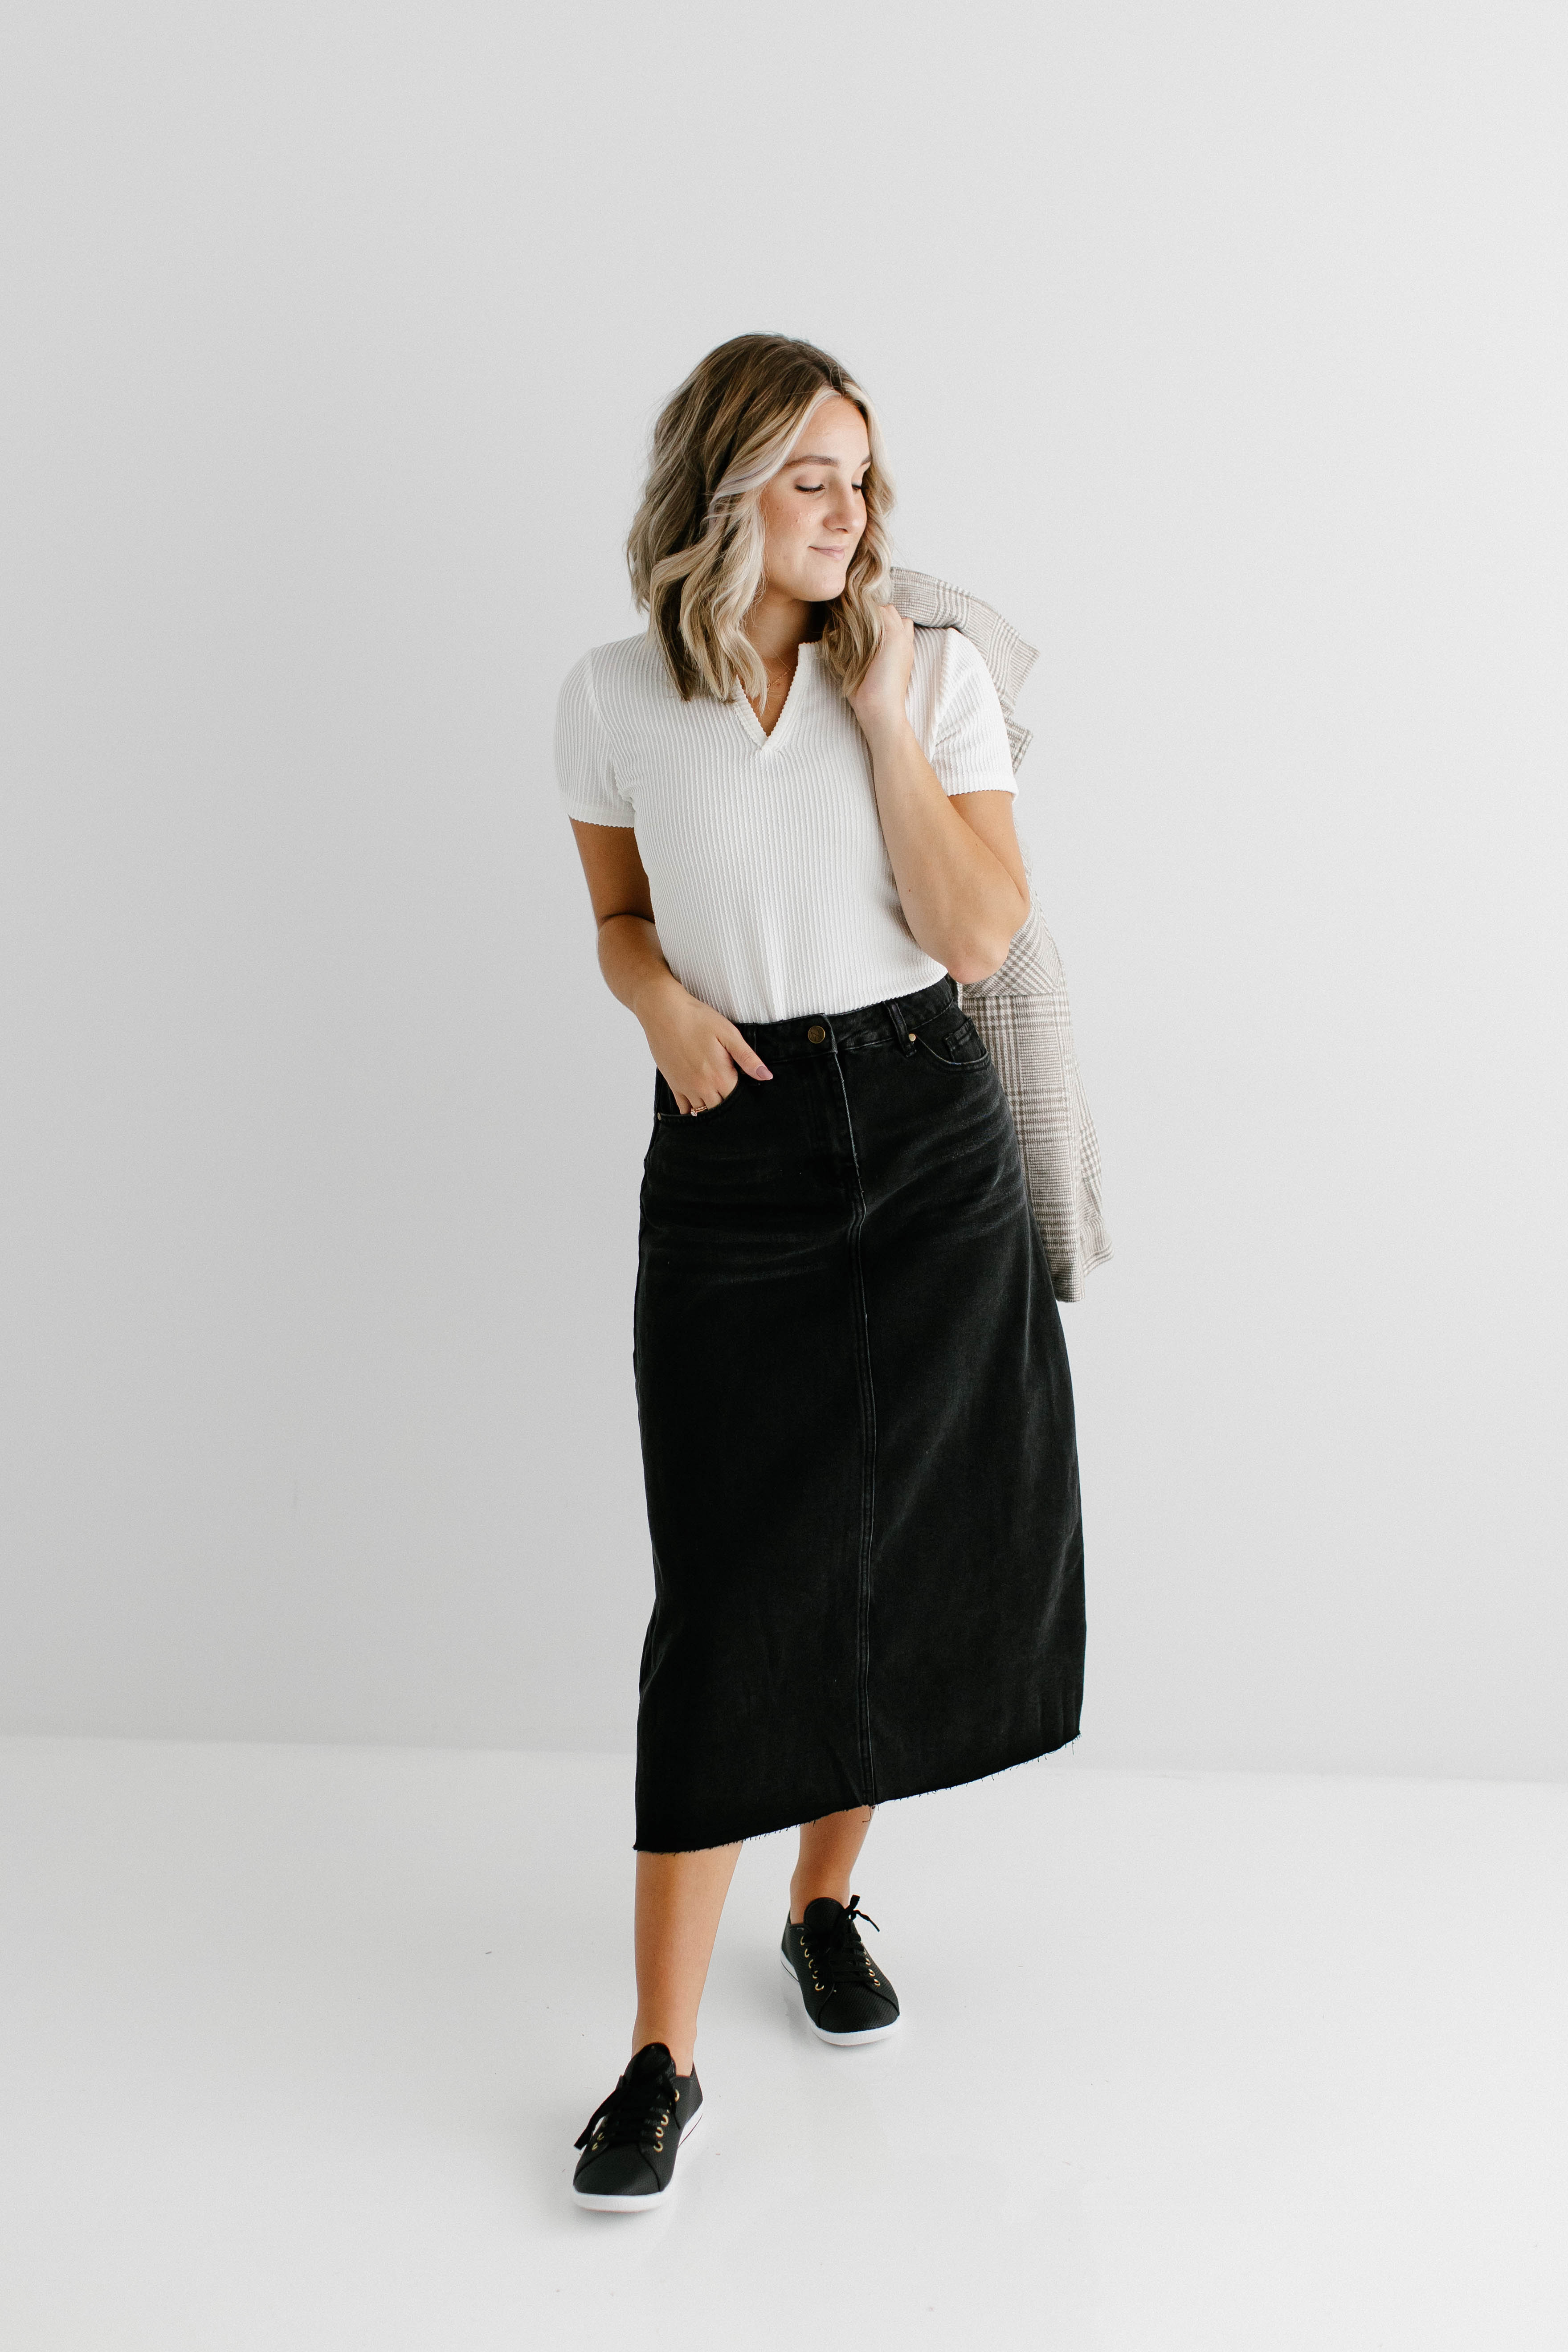 Piper' Girl Knit Denim Skirt in Black – The Main Street Exchange